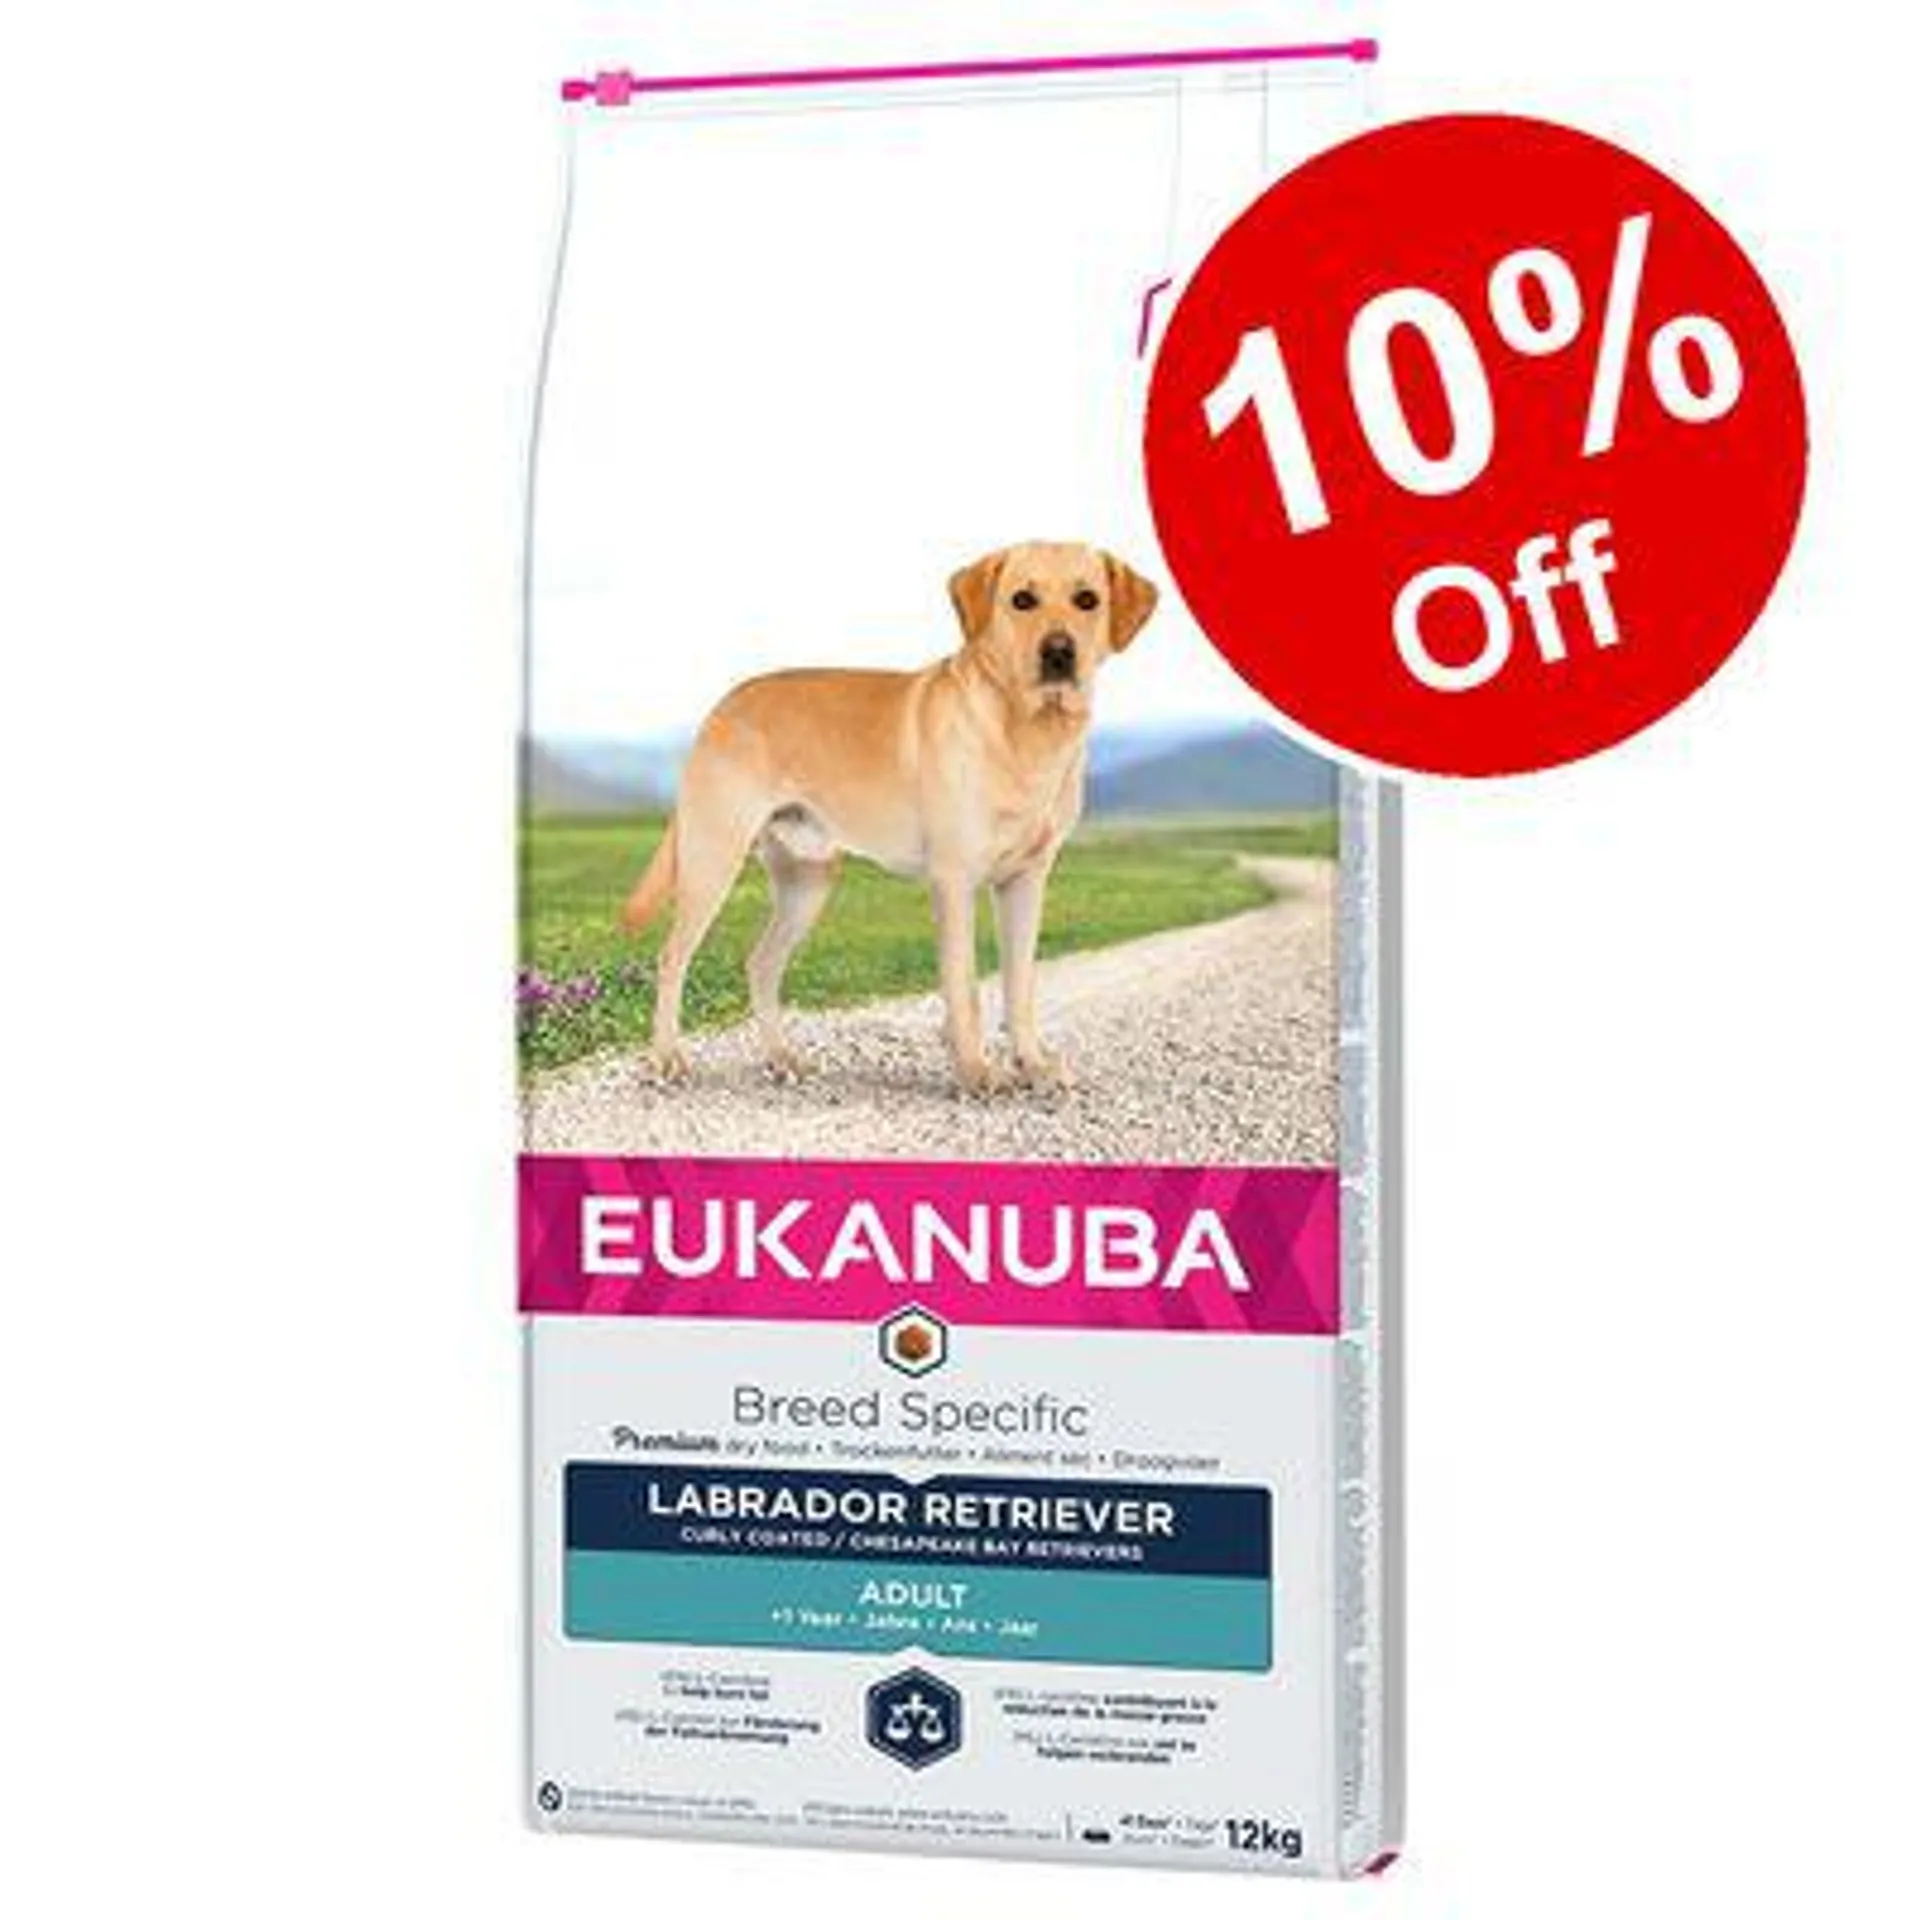 Eukanuba Dry Dog Food - 10% Off! *